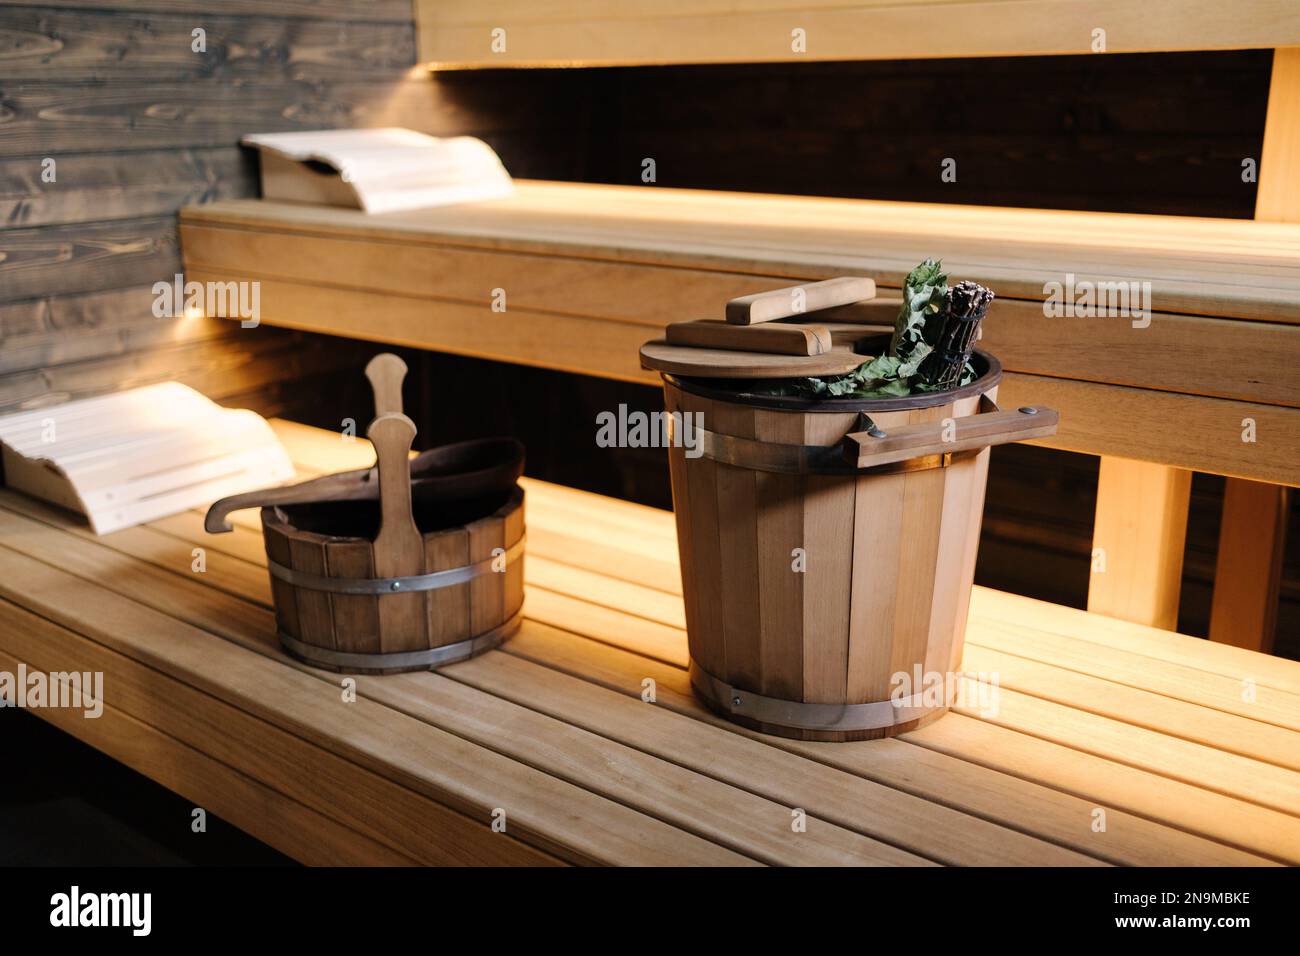 Interior de sauna finlandesa. Vista frontal de la clásica sauna de